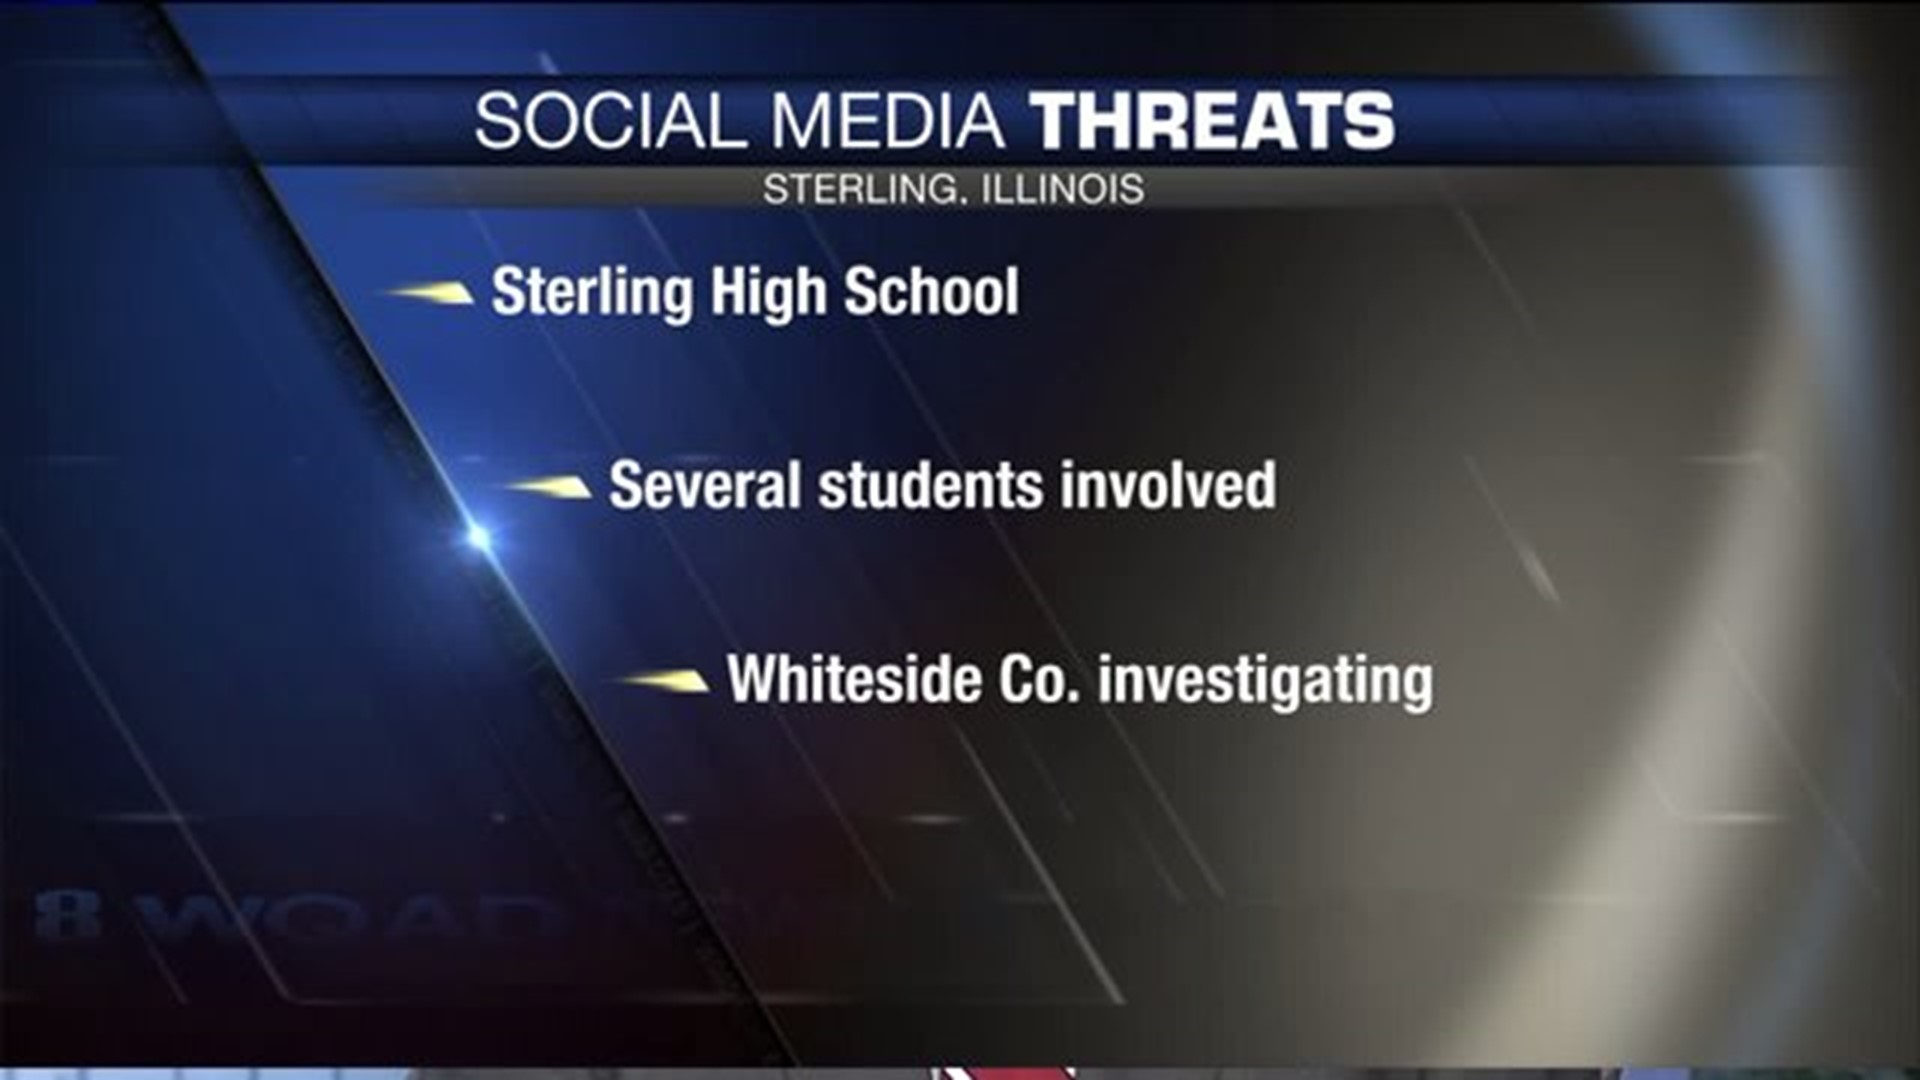 Social media threats in Sterling, Illinois